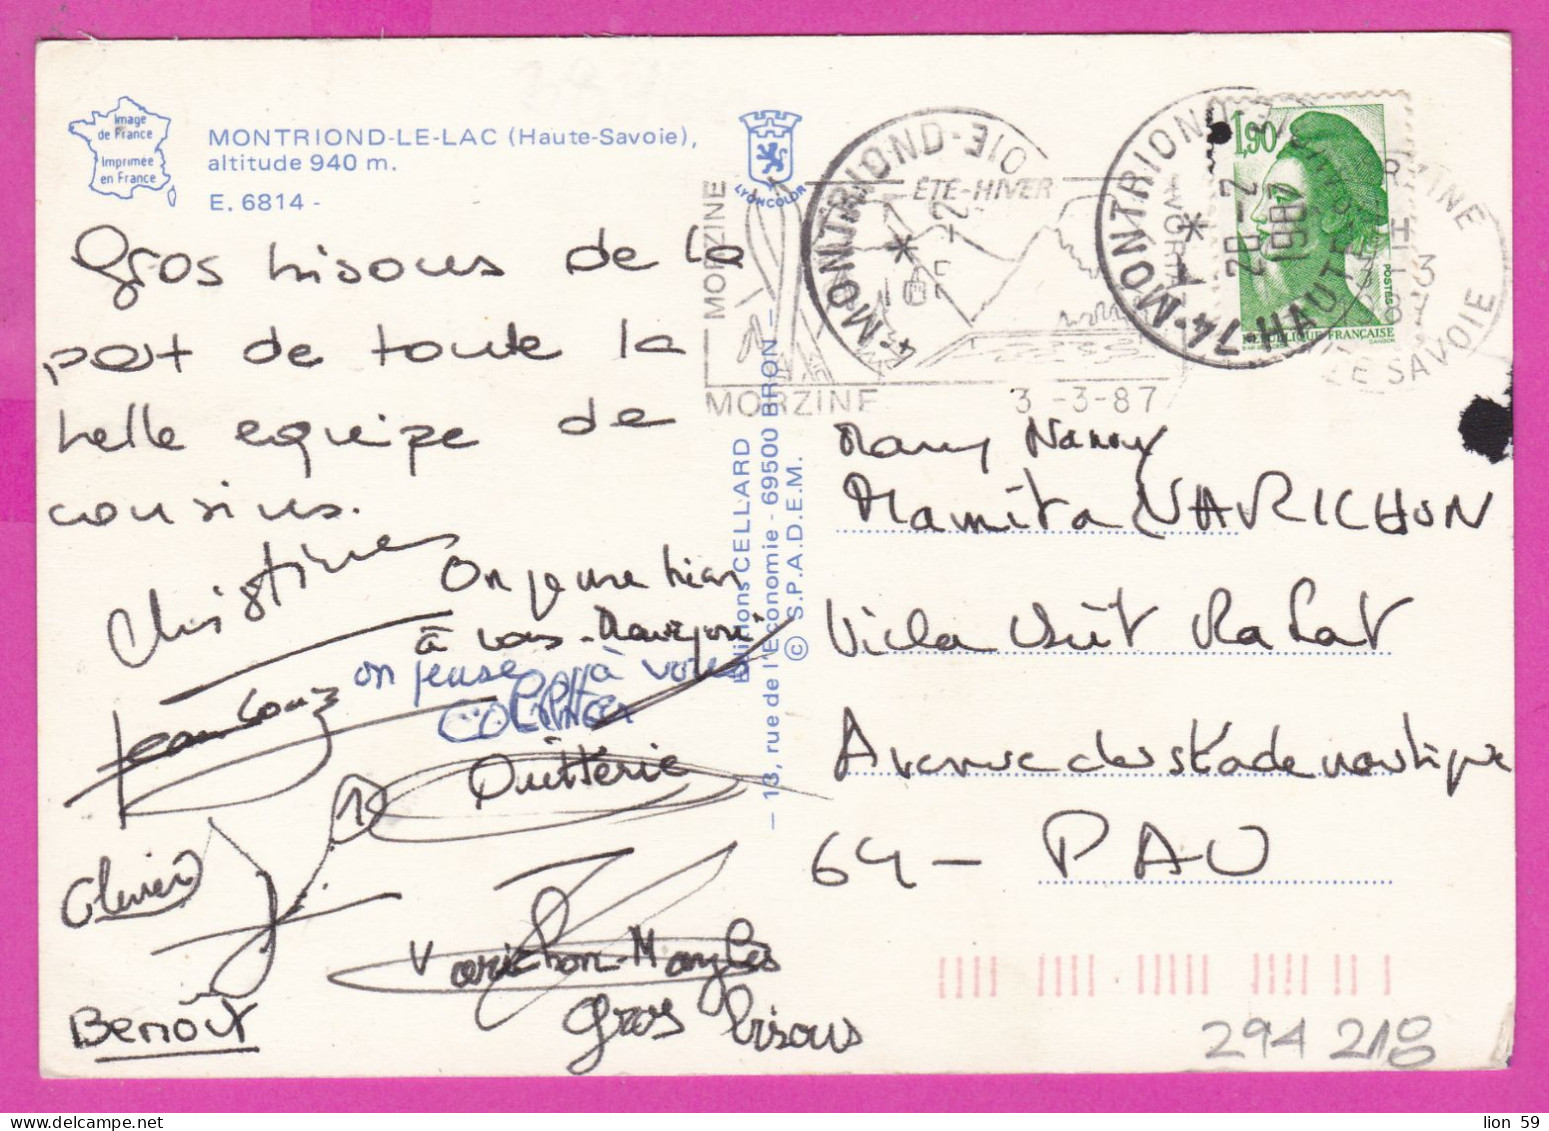 294218 / France - MONTRIOND-LE-LAC (Haute-Savoie) PC 1987 USED 1.90 Fr. Liberty of Gandon , Flamme Été-Hiver , MORZINE 3